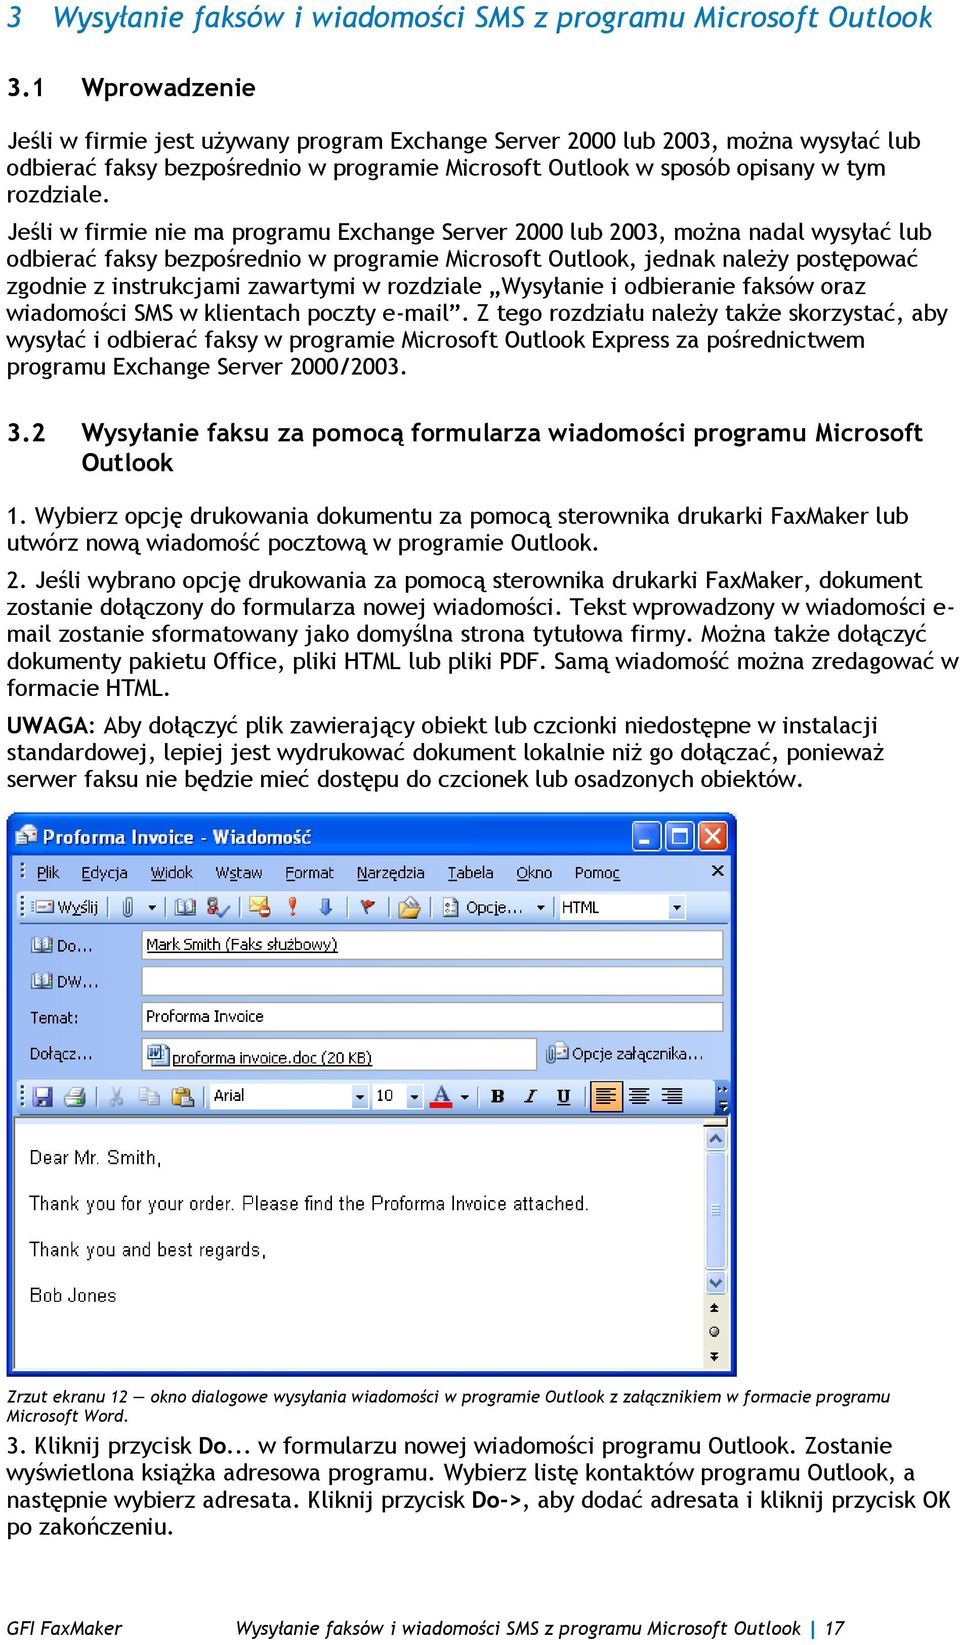 Jeśli w firmie nie ma programu Exchange Server 2000 lub 2003, można nadal wysyłać lub odbierać faksy bezpośrednio w programie Microsoft Outlook, jednak należy postępować zgodnie z instrukcjami